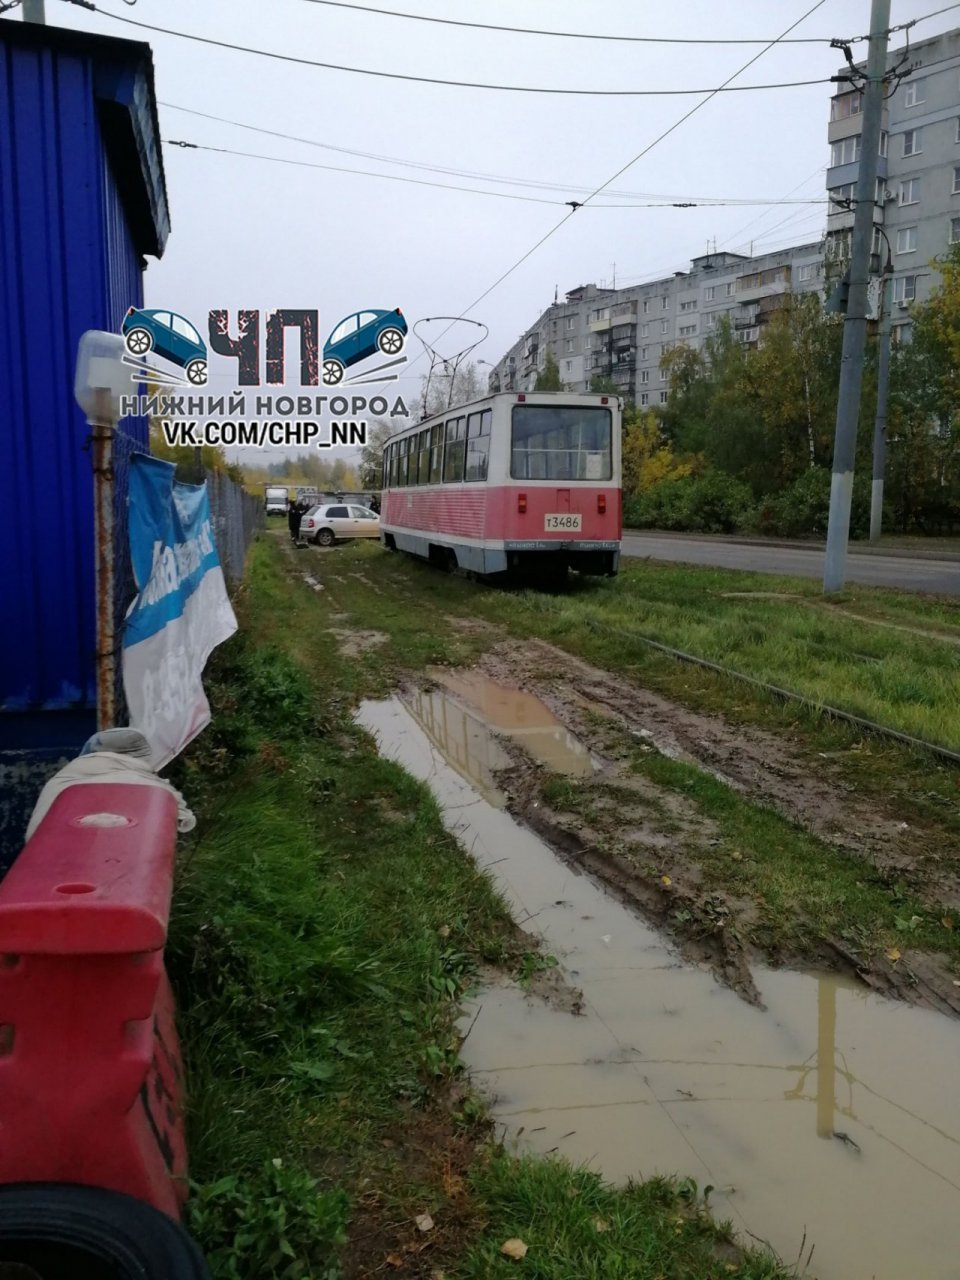 Неудачная попытка угона: машина застряла на рельсах в Автозаводском районе